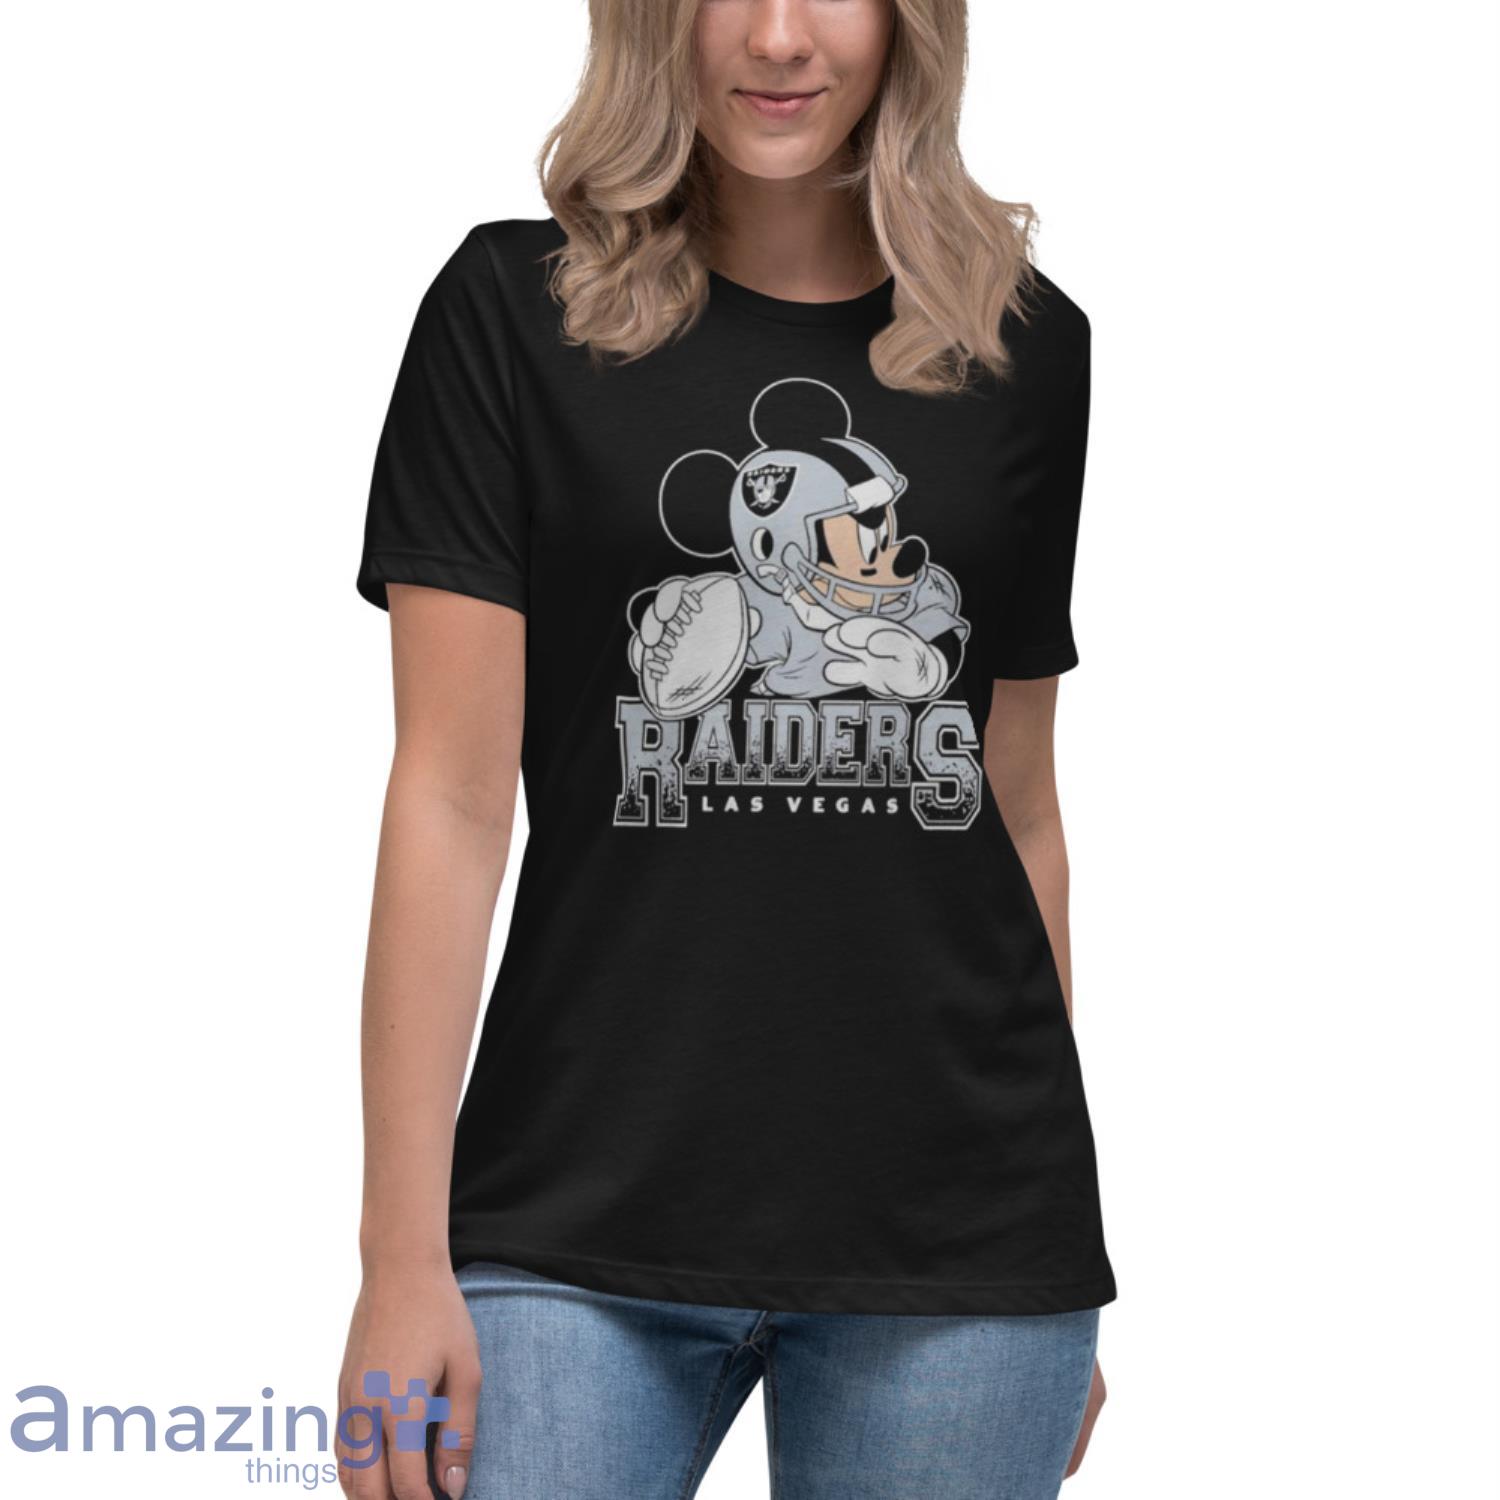 Official Las Vegas Raiders T-Shirts, Raiders Tees, Shirts, Tank